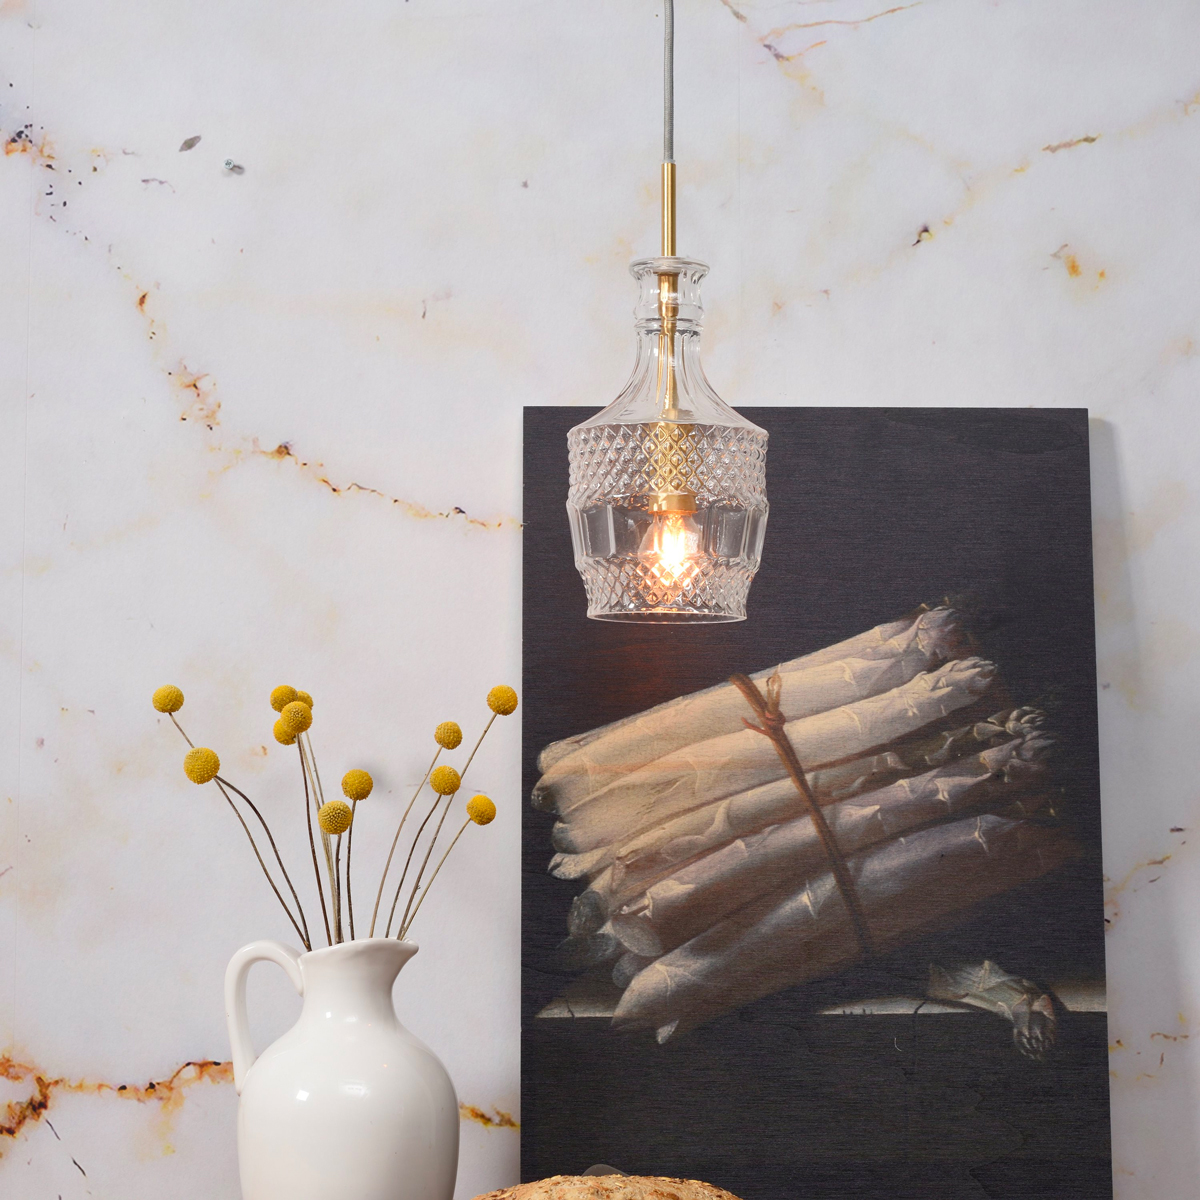 Deze stijlvolle 'It's about RoMi' hanglamp met decoratief glas en gouden details is super chic. 